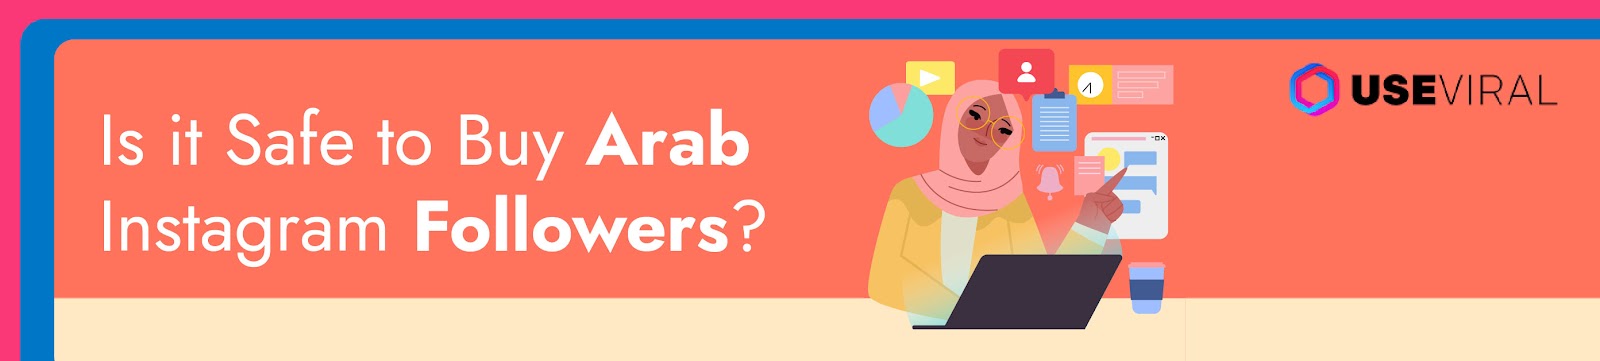 Is it Safe to Buy Arab Instagram Followers?